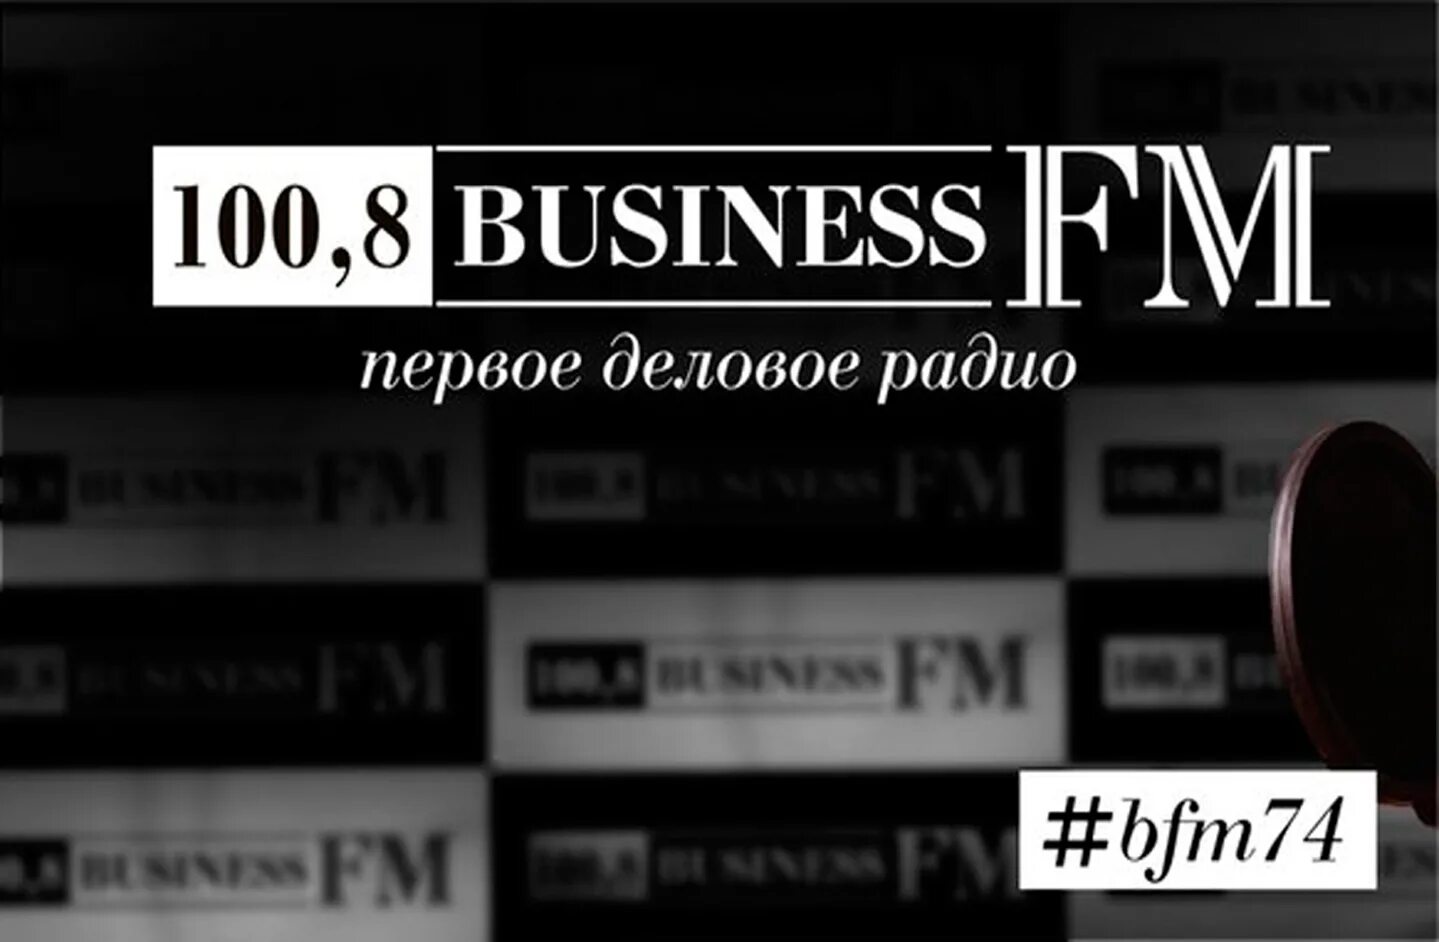 Радио бизнес. Бизнес fm. Бизнес ФМ логотип. Радиостанция бизнес ФМ. Бизнес радио сайт